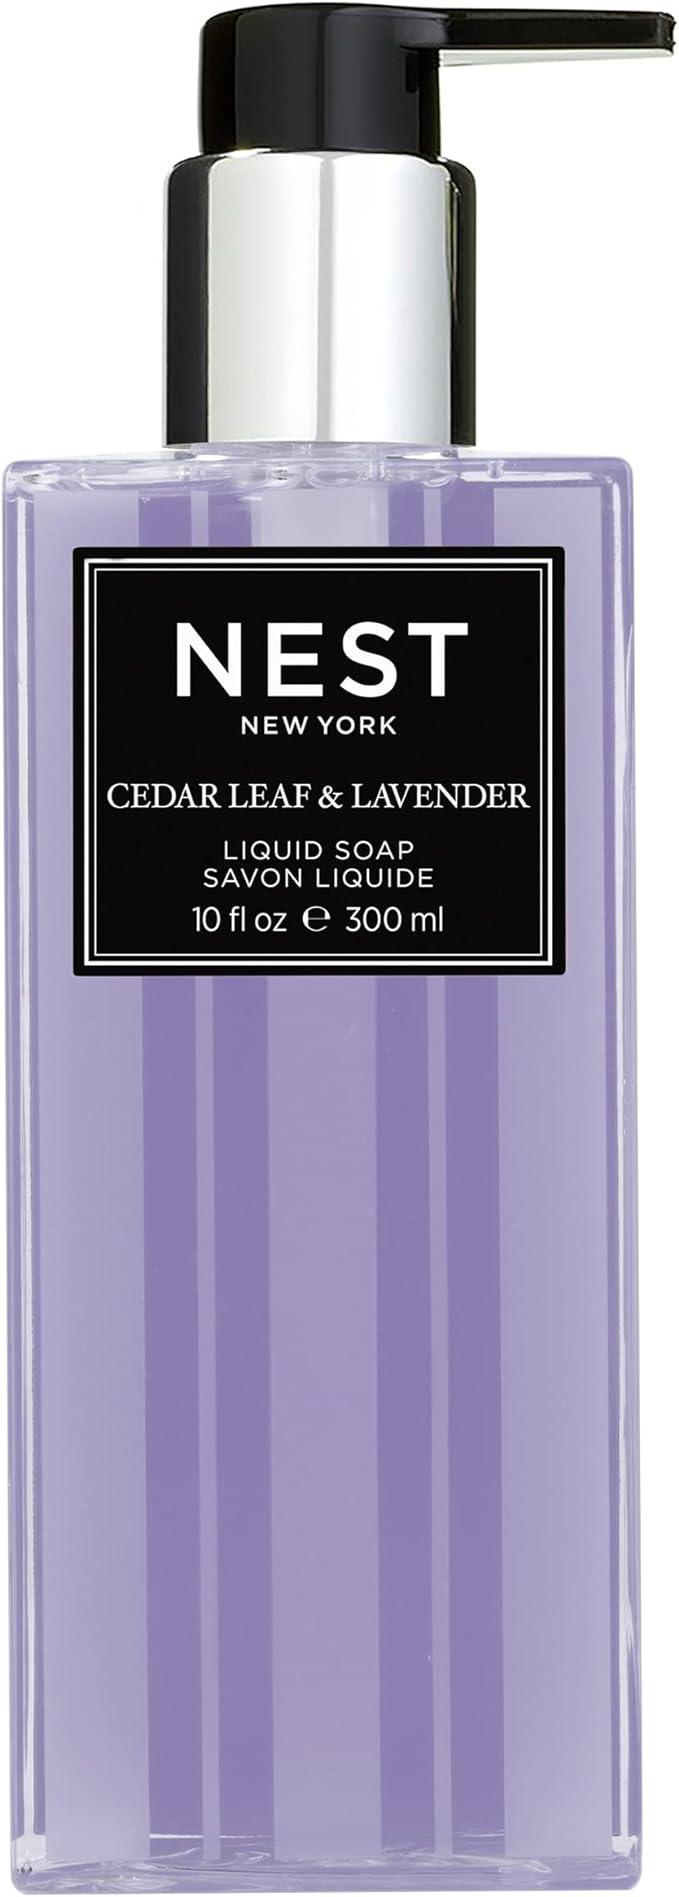 nest new york cedar leaf and lavender liquid hand soap 10 fl oz  nest fragrances b0948gv4y3